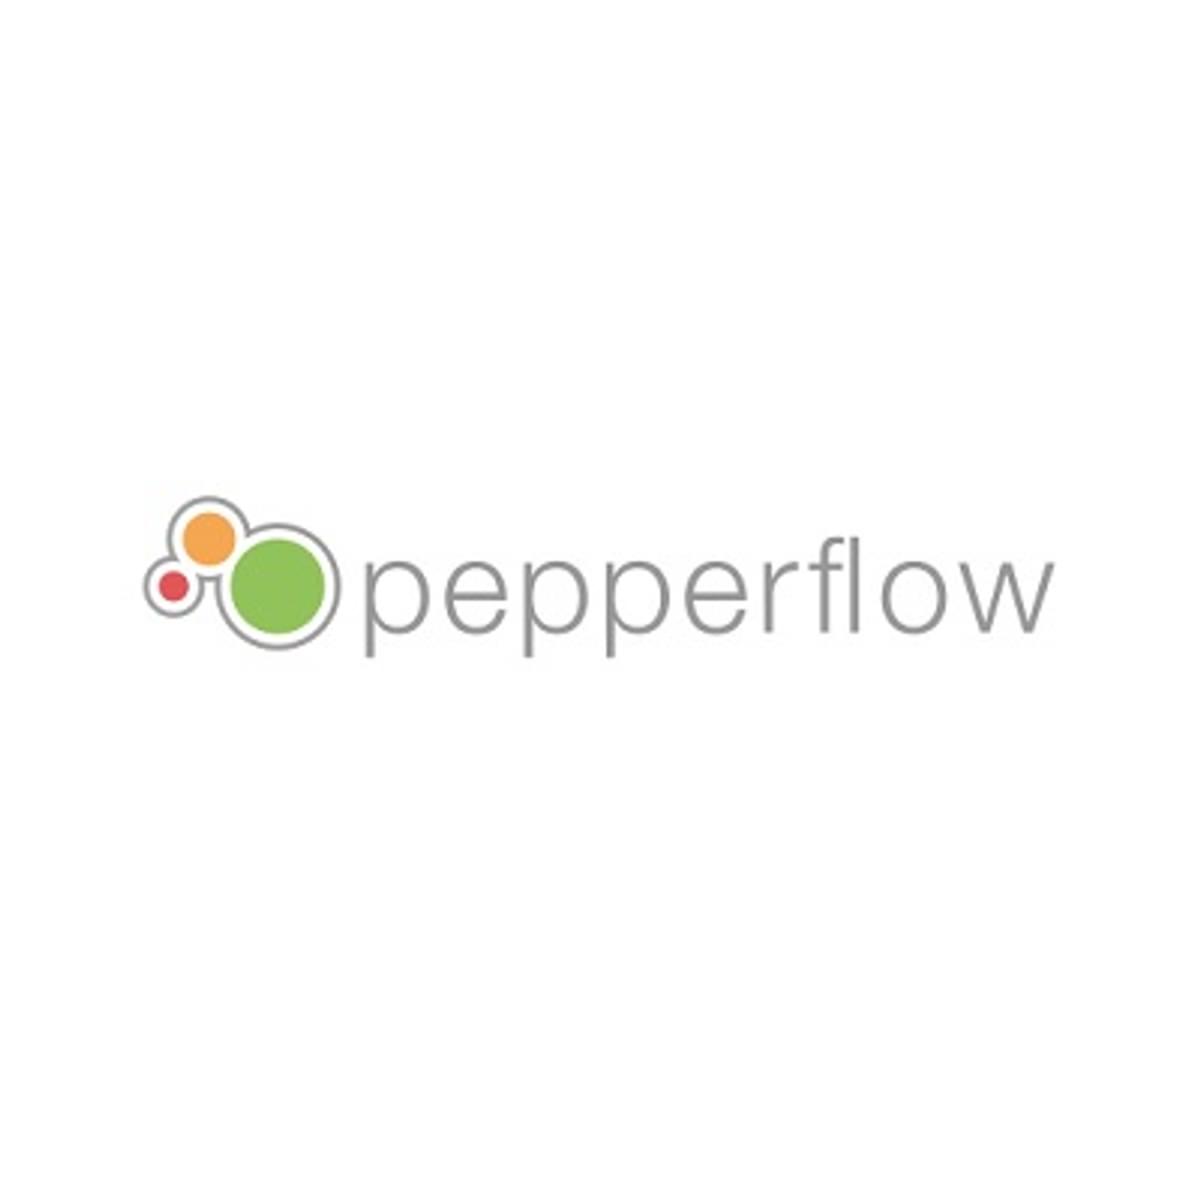 Pepperflow en Finext gaan partnership aan image